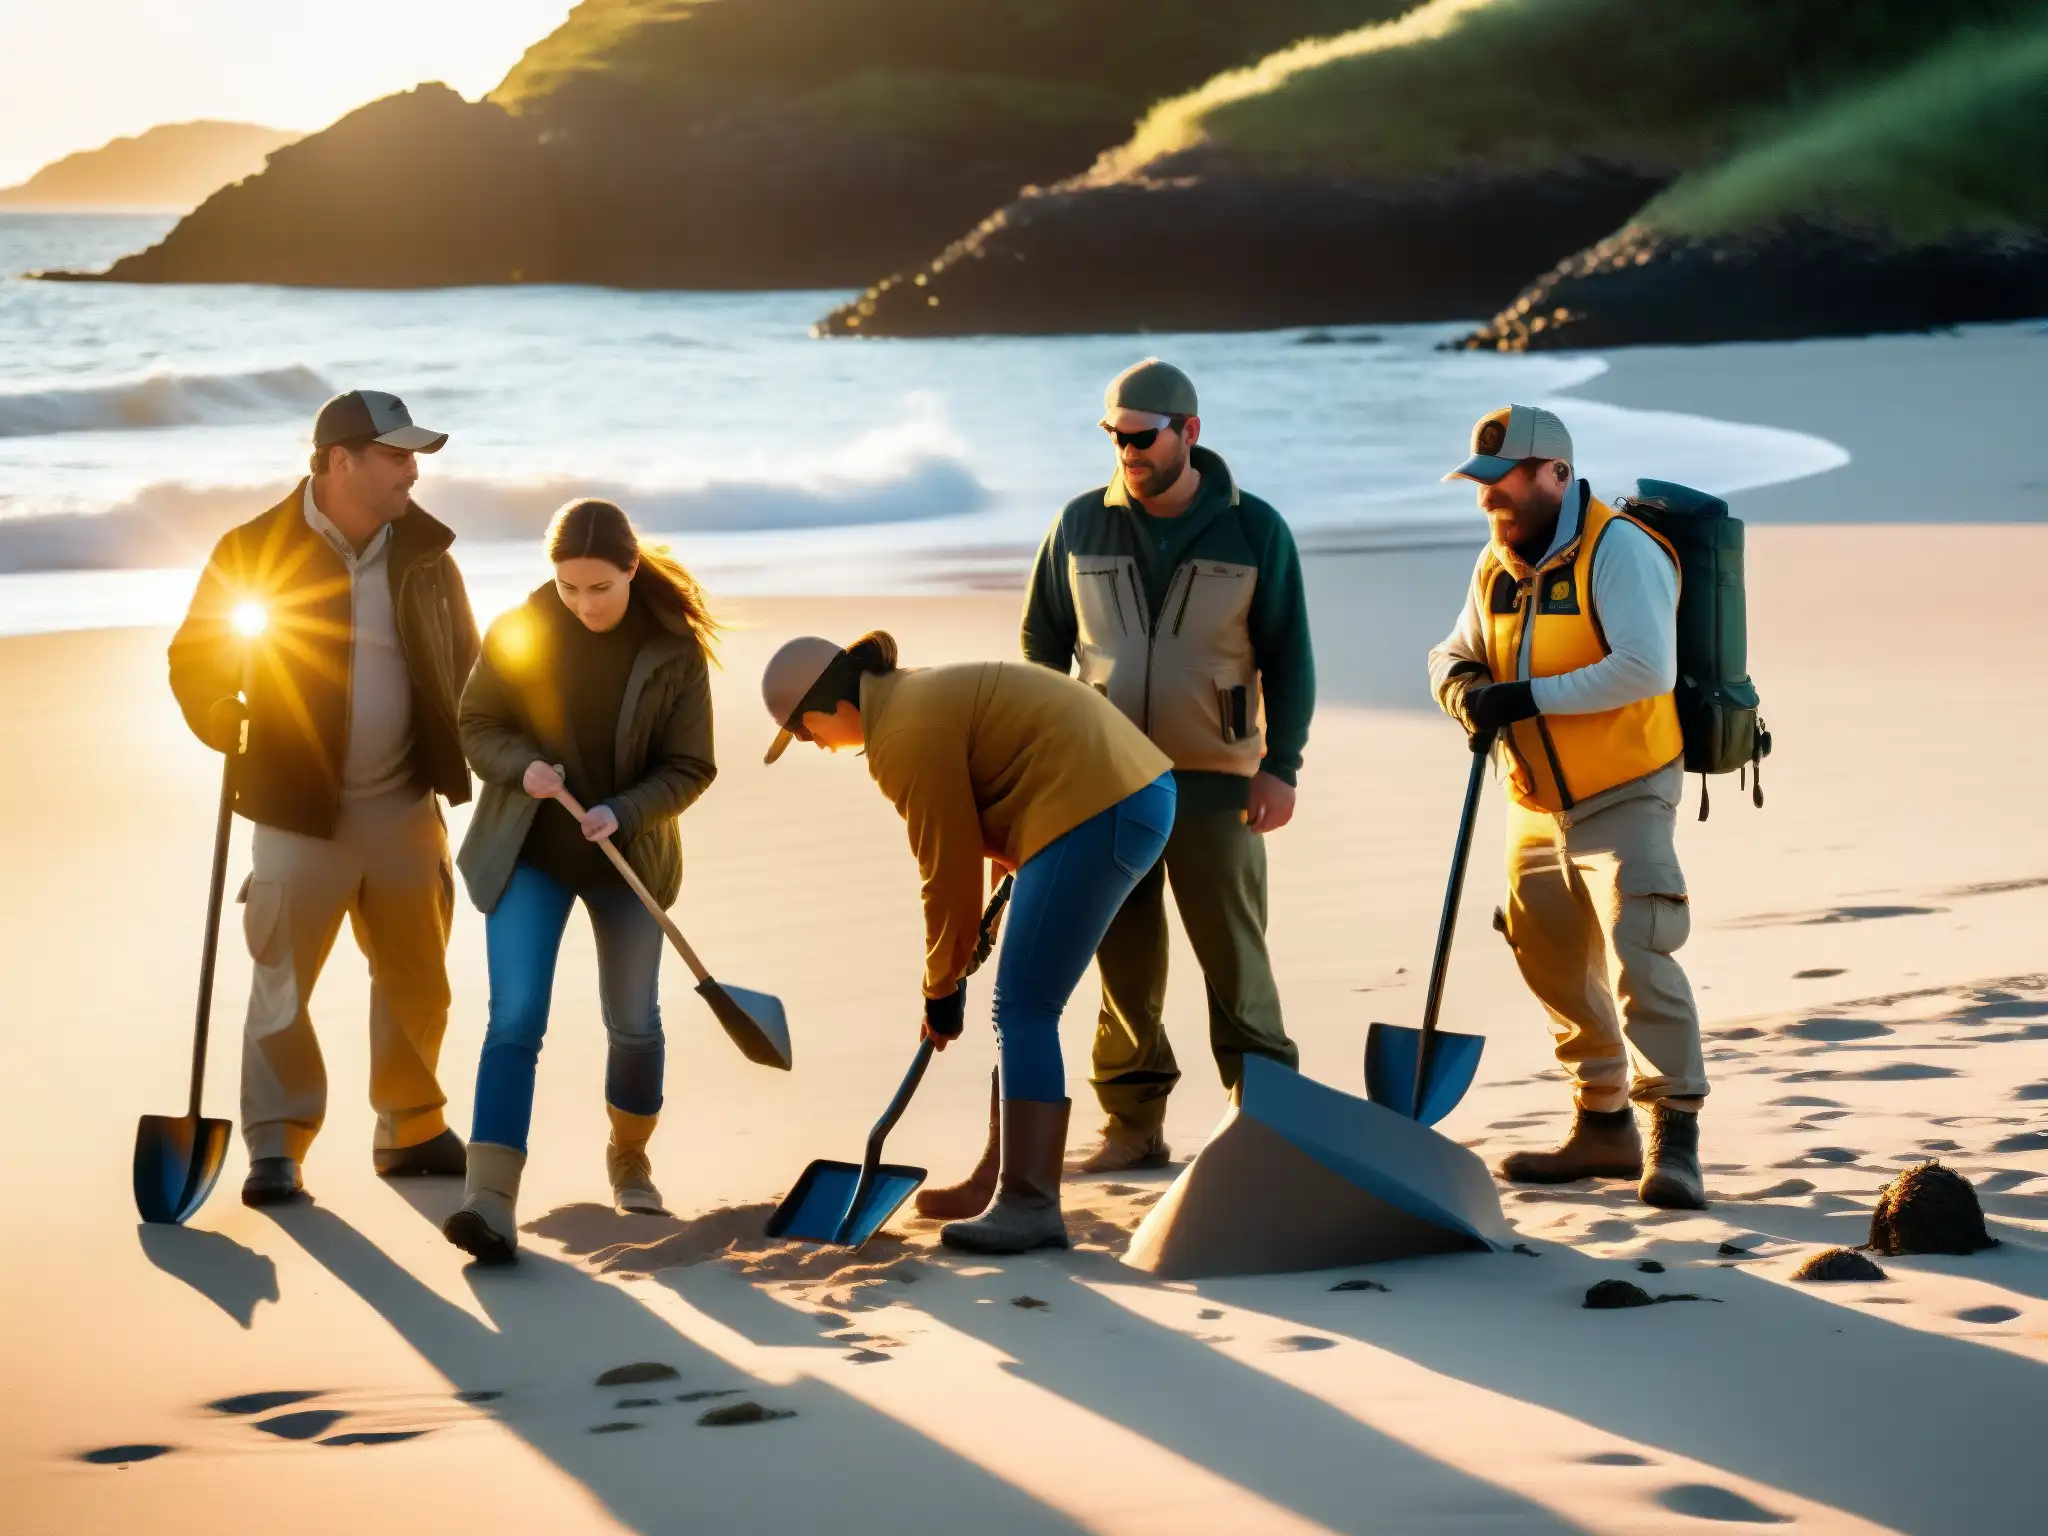 Un grupo de cazadores de tesoros busca con determinación en la playa de una remota isla, con el sol poniéndose en el horizonte